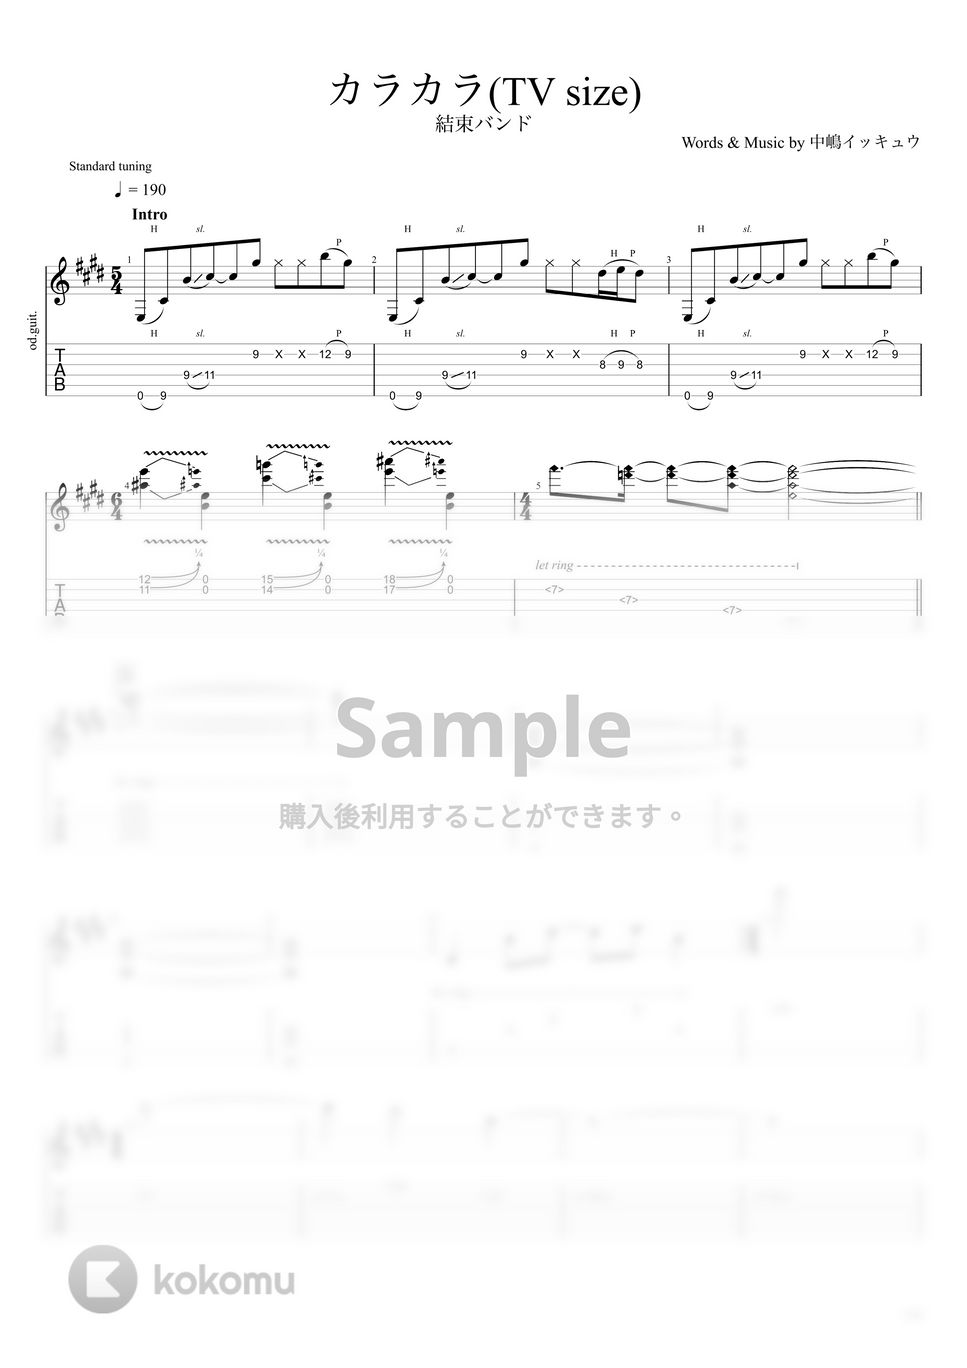 結束 バンド - カラカラ(TV size) (ギター) by うつみ